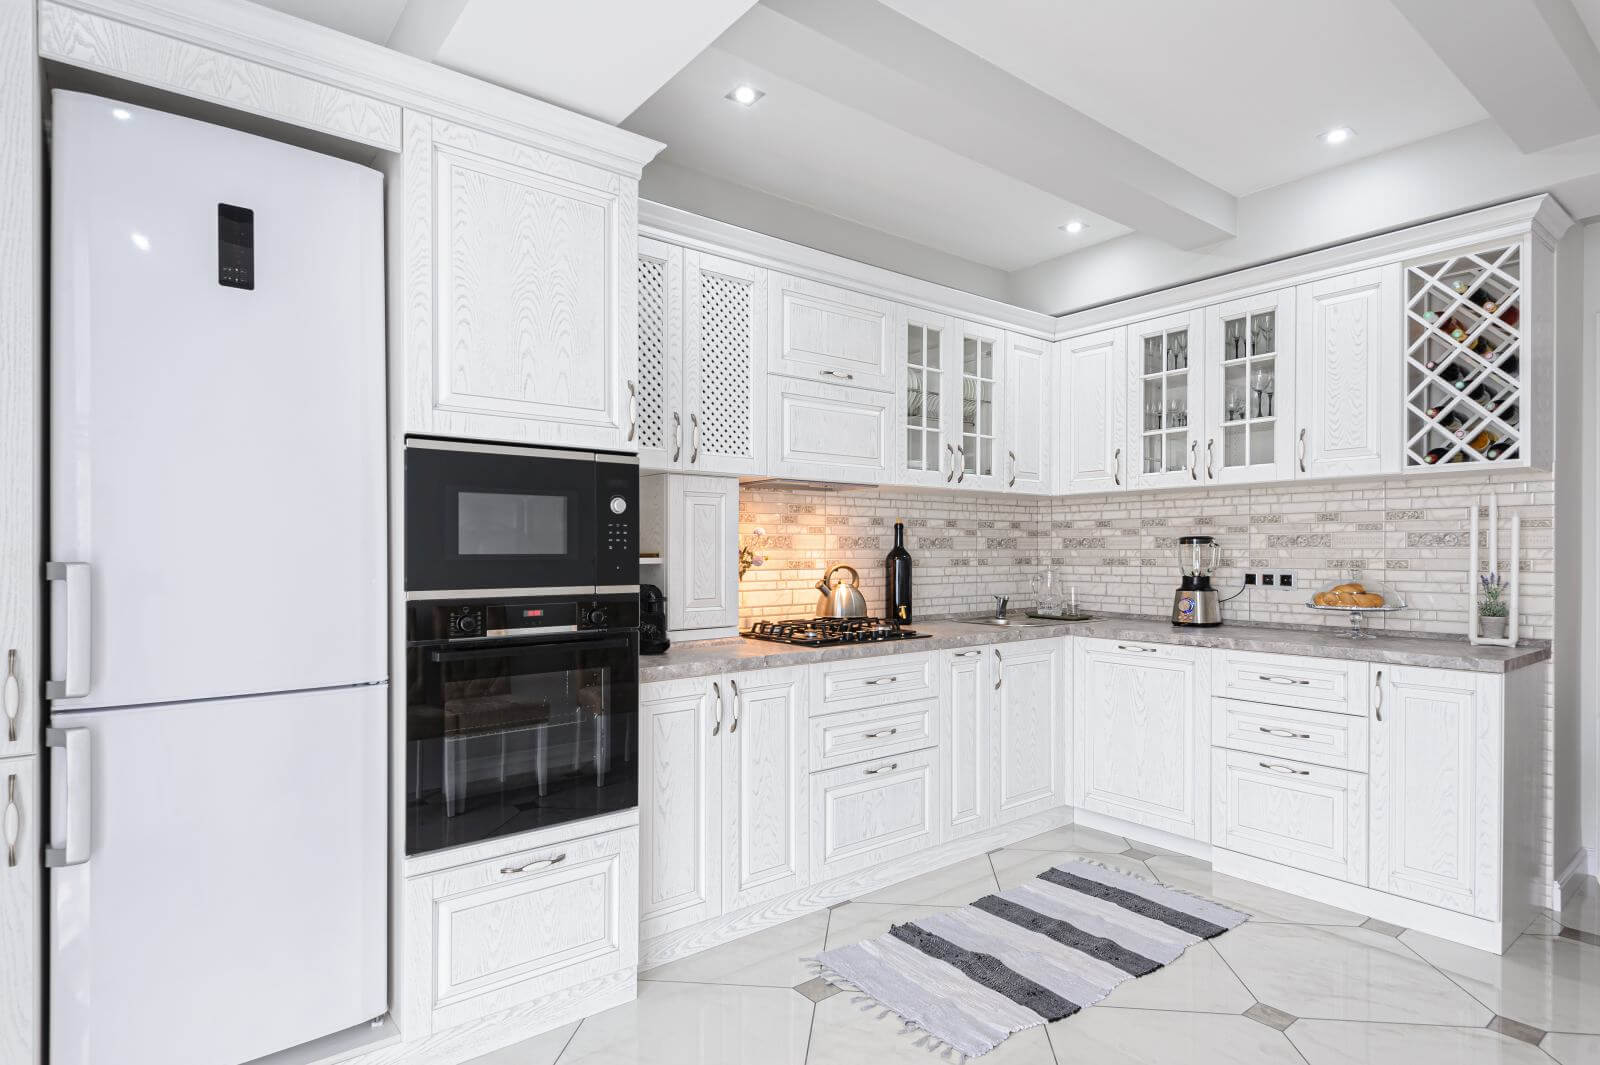 interior of modern white wooden kitchen in luxury home